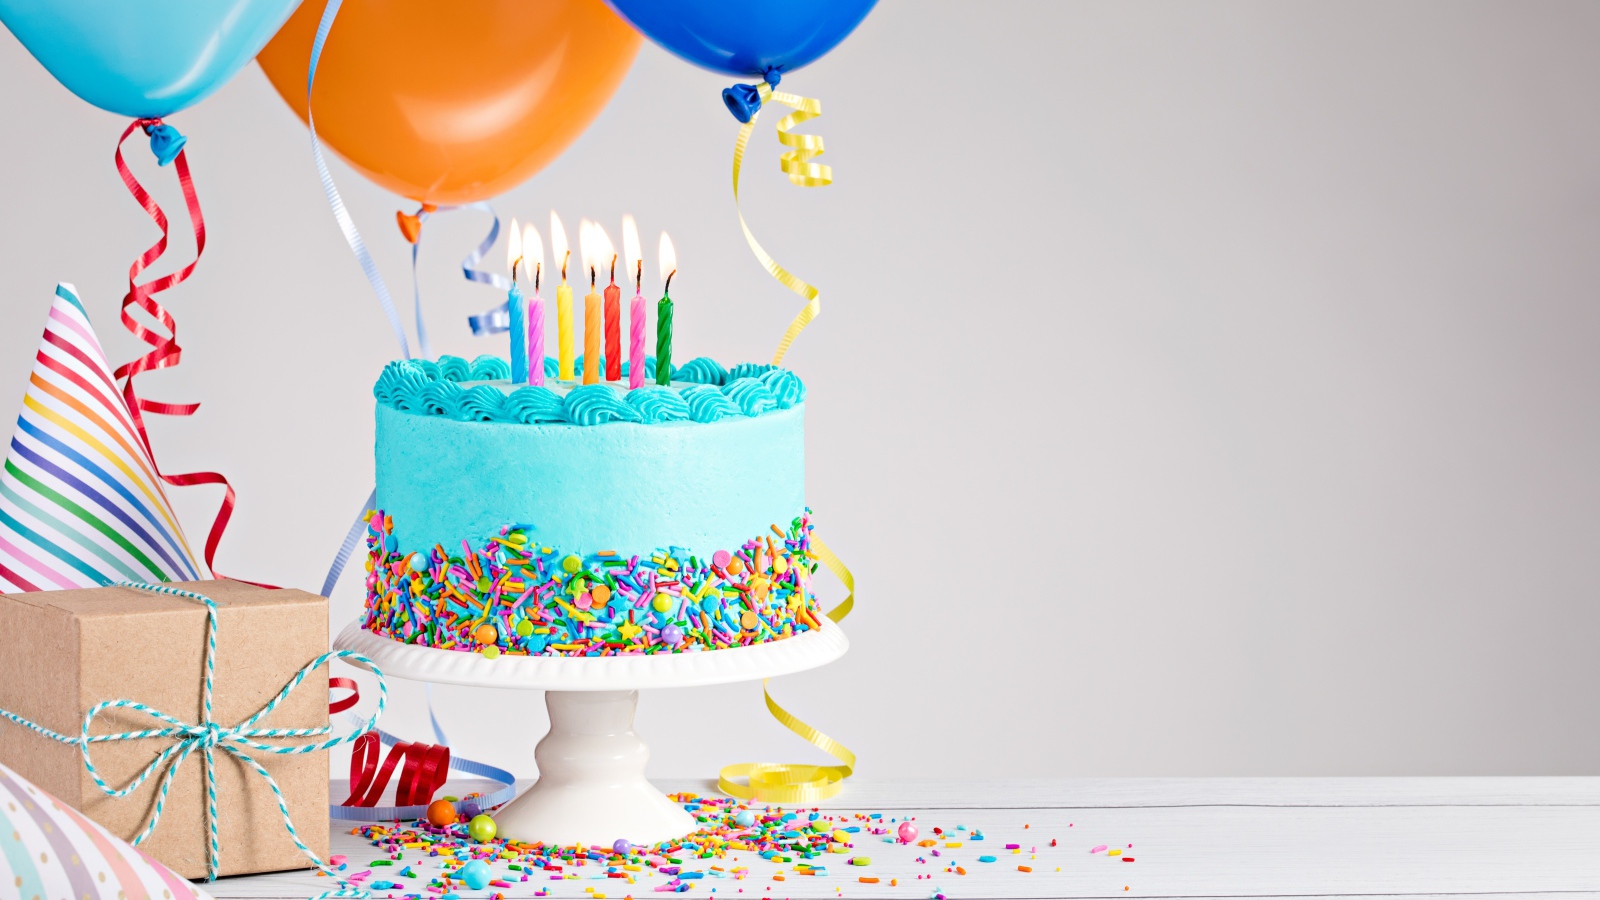 Красивый торт на день рождения с воздушными шарами и подарком